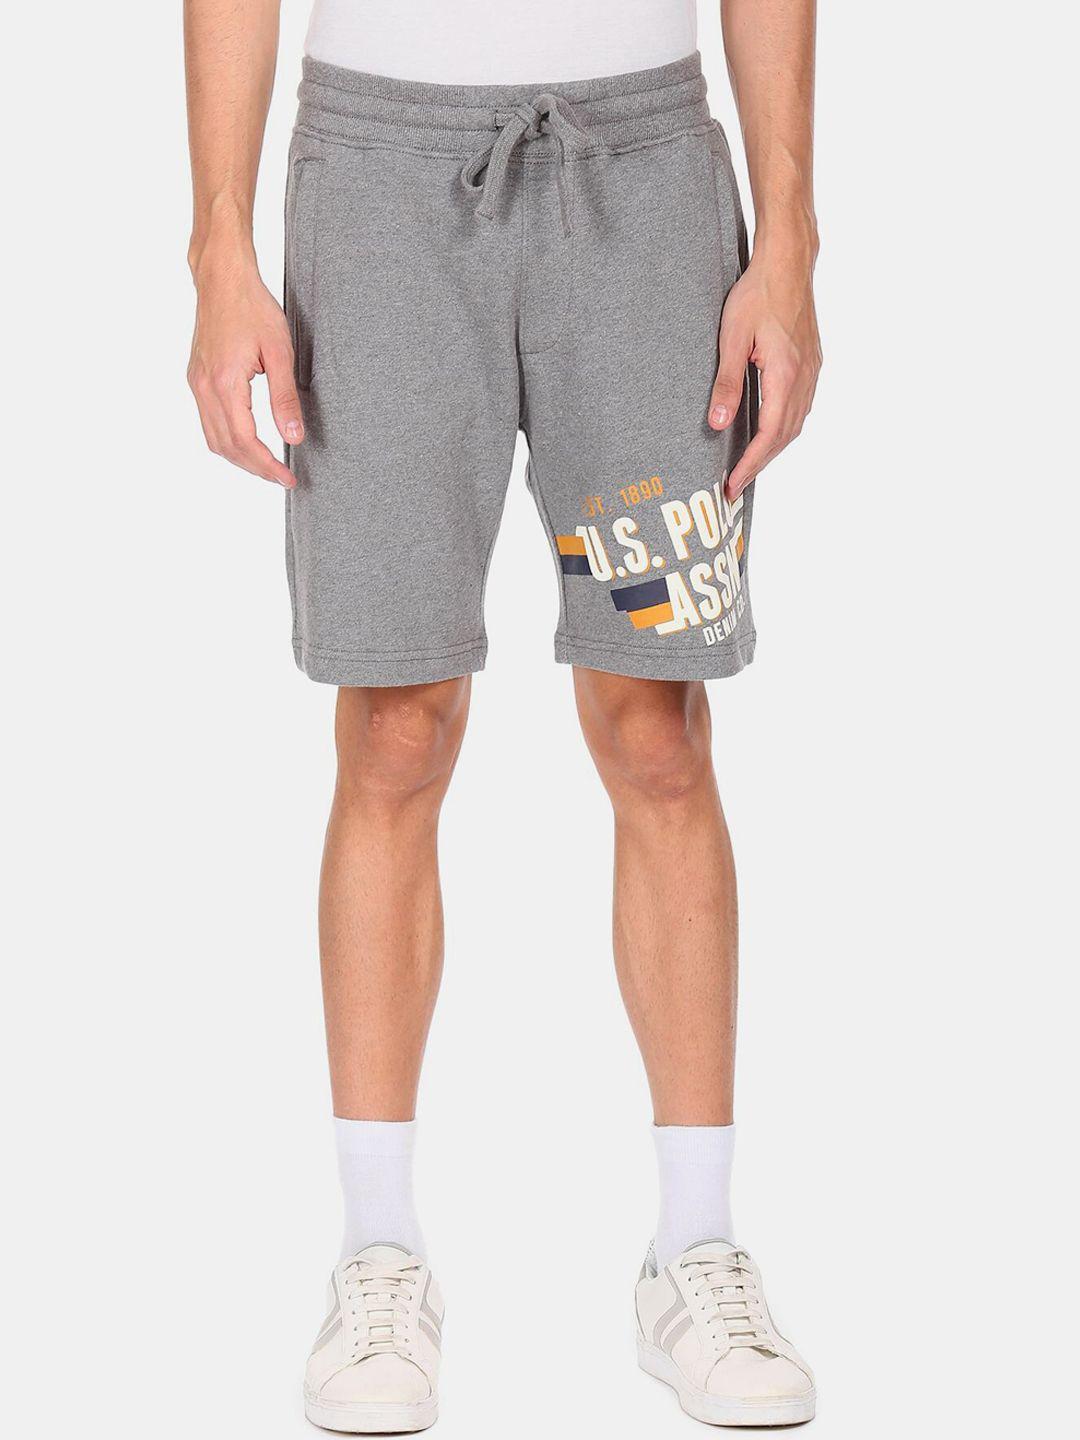 u.s. polo assn. denim co. men grey printed shorts